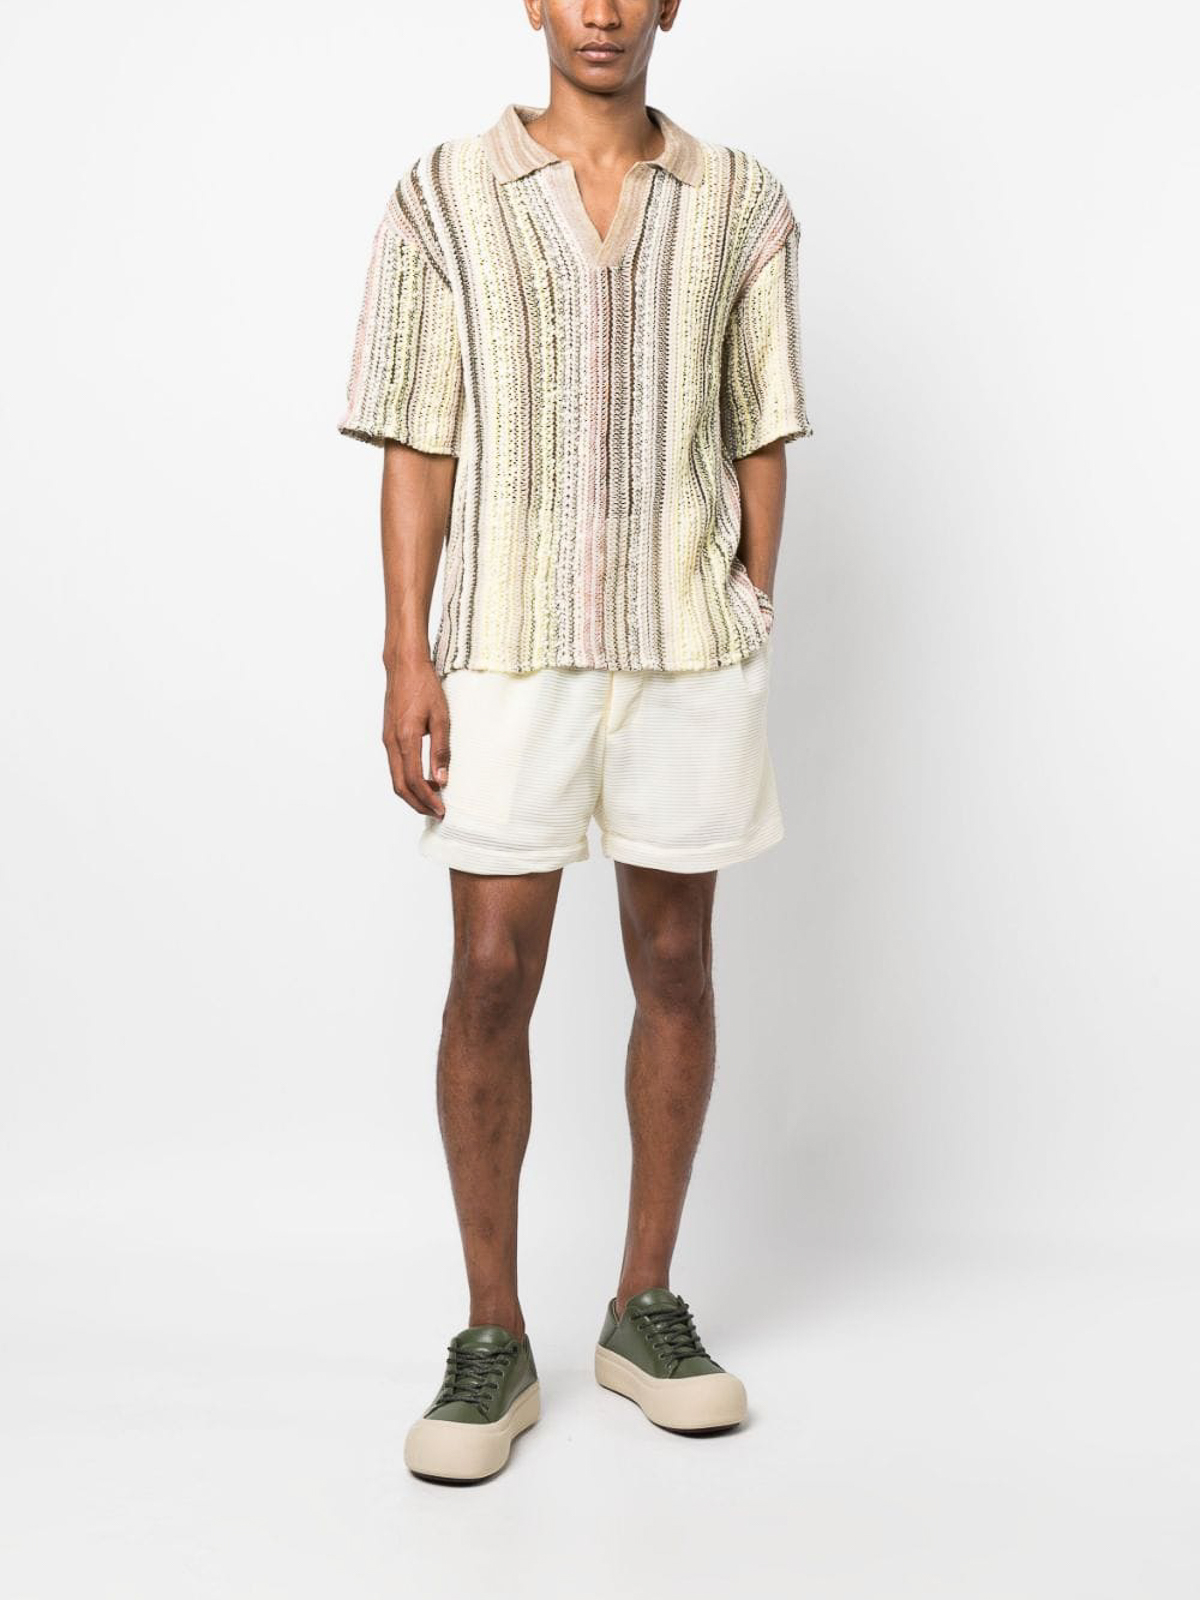 Shop Vitelli Linen Blend Cotton Polo Shirt In Multicolour